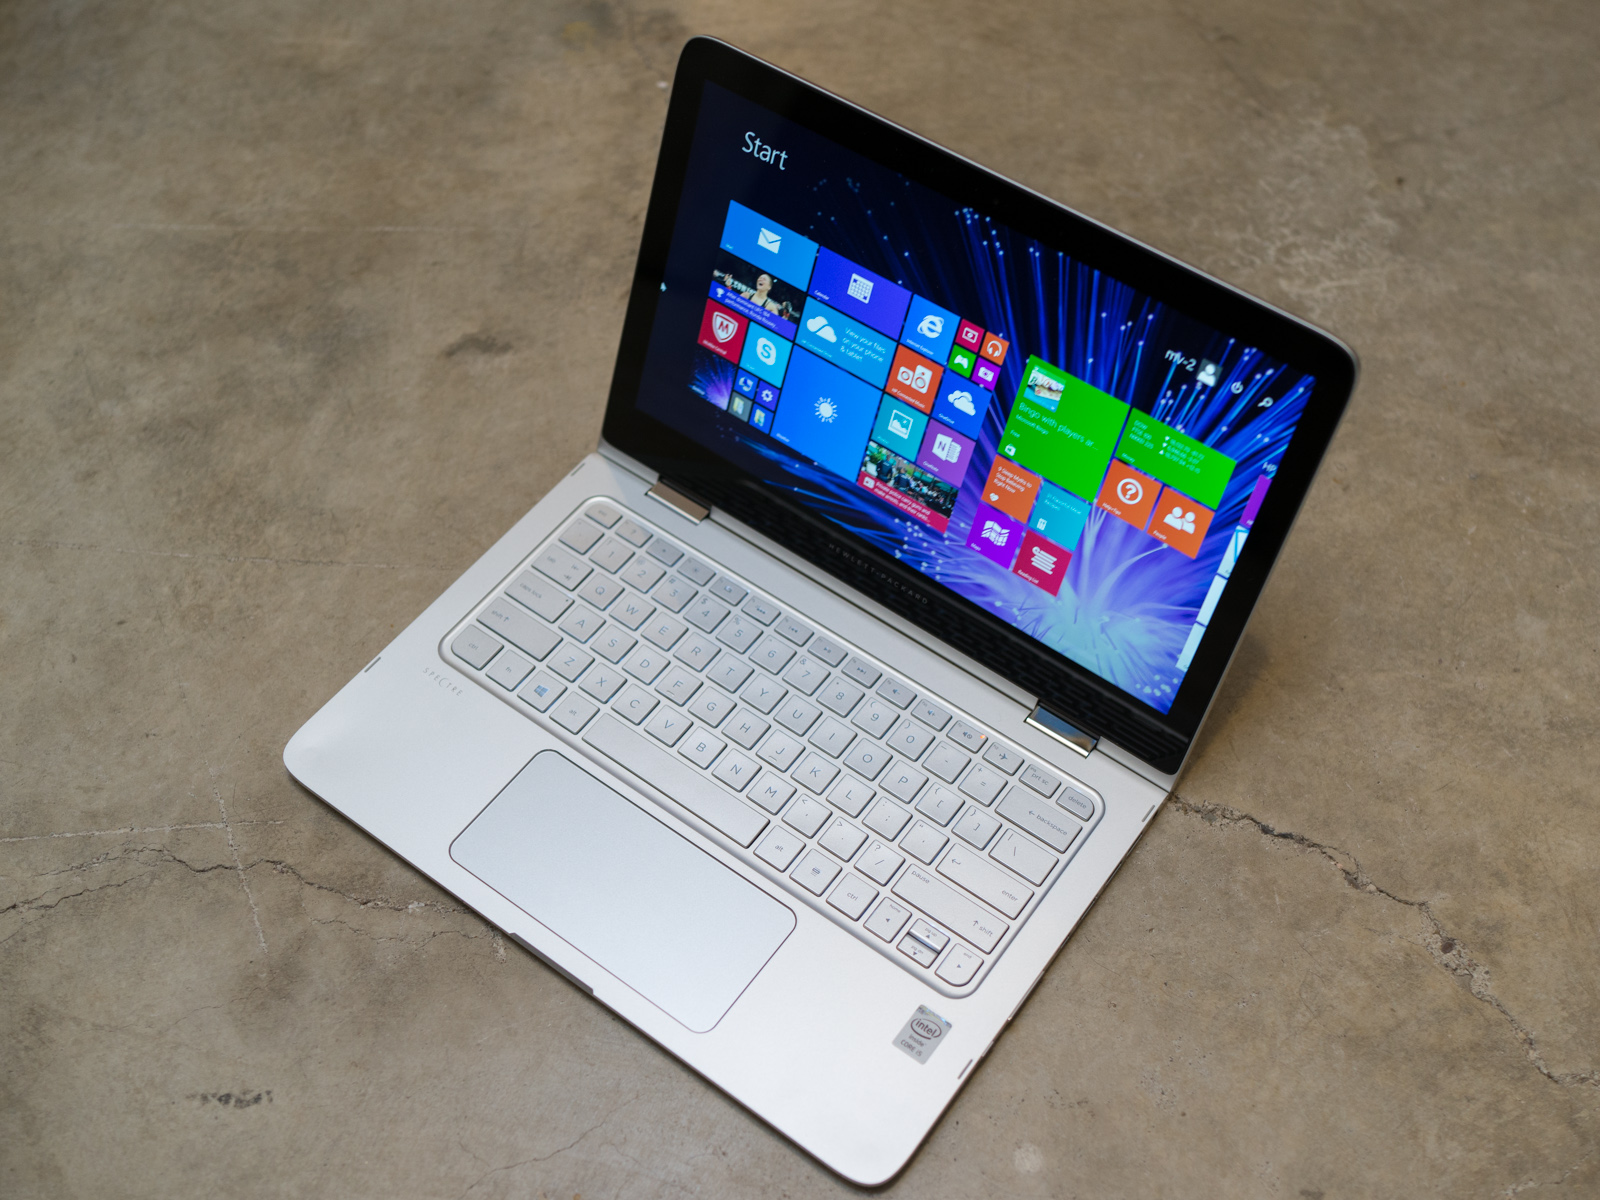 HP Spectre x360 - lightweight laptop